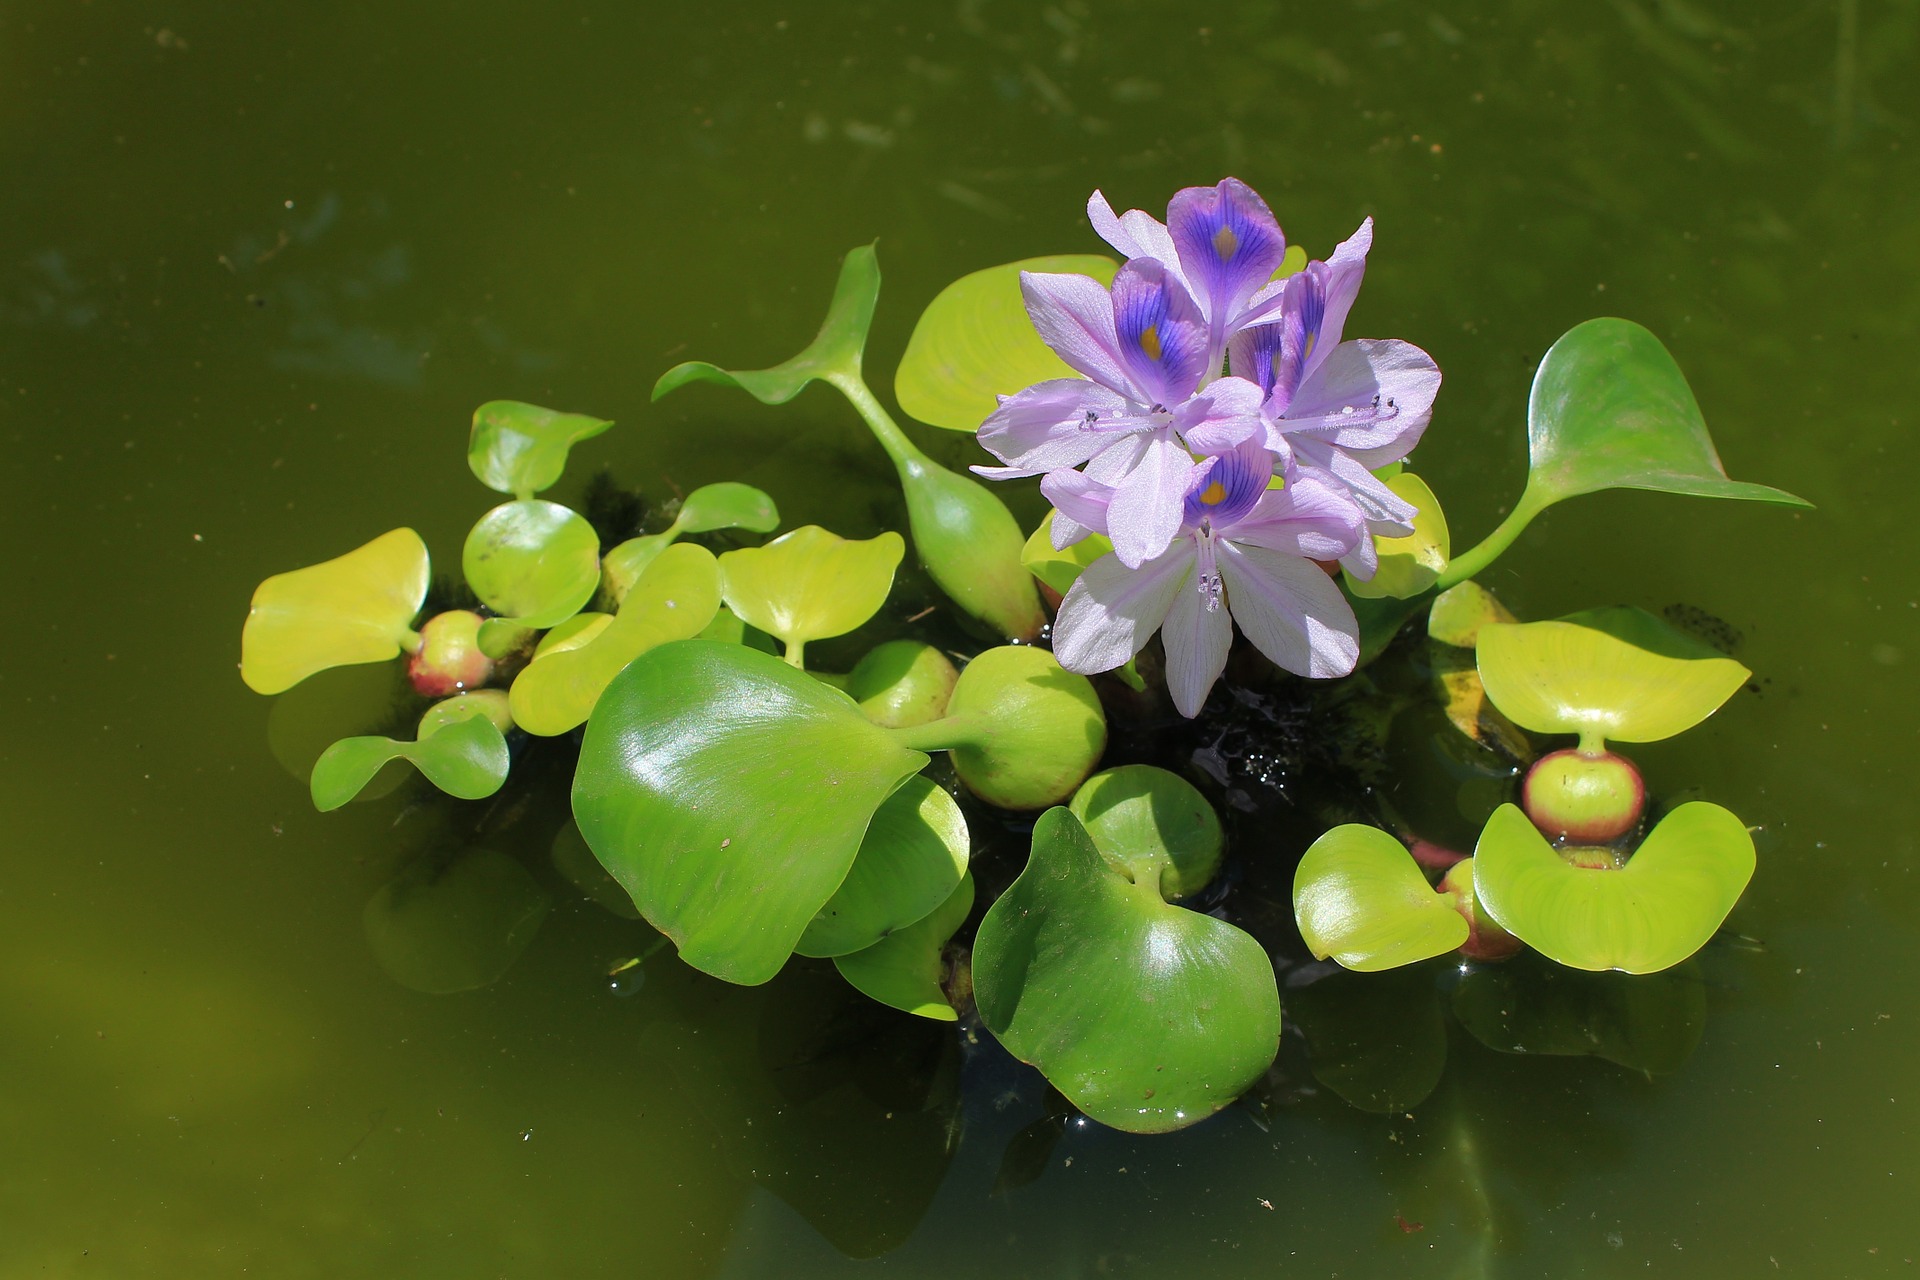 Bei der Auswahl von Pflanzen für einen Teich ist es am besten, deren wasserreinigende Eigenschaften zu berücksichtigen.